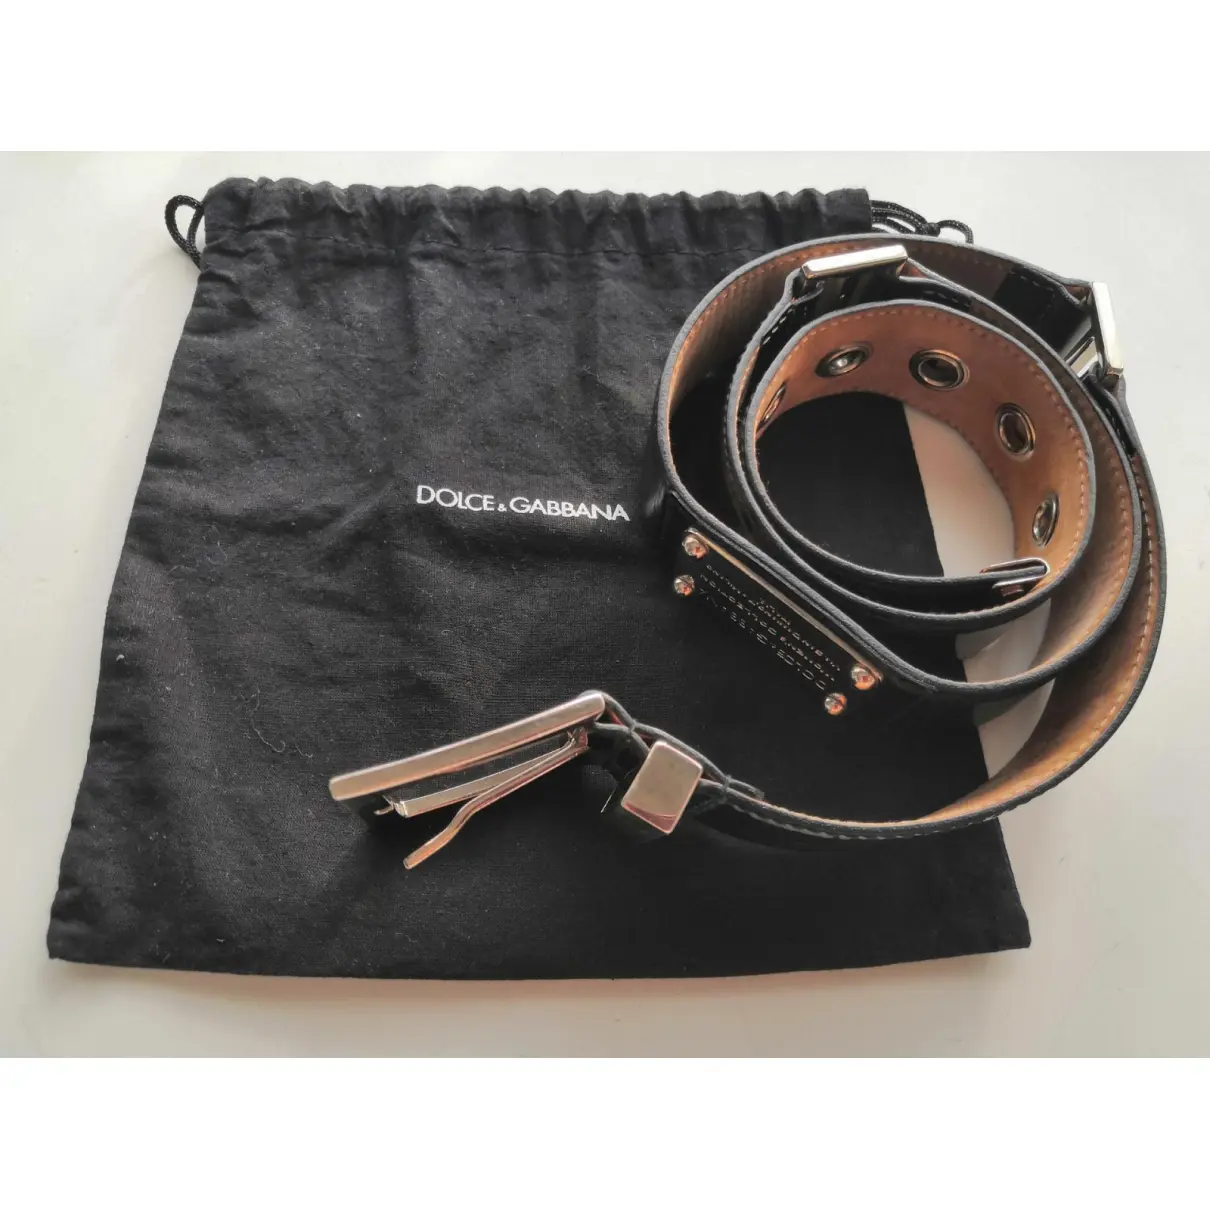 Leather belt Dolce & Gabbana - Vintage